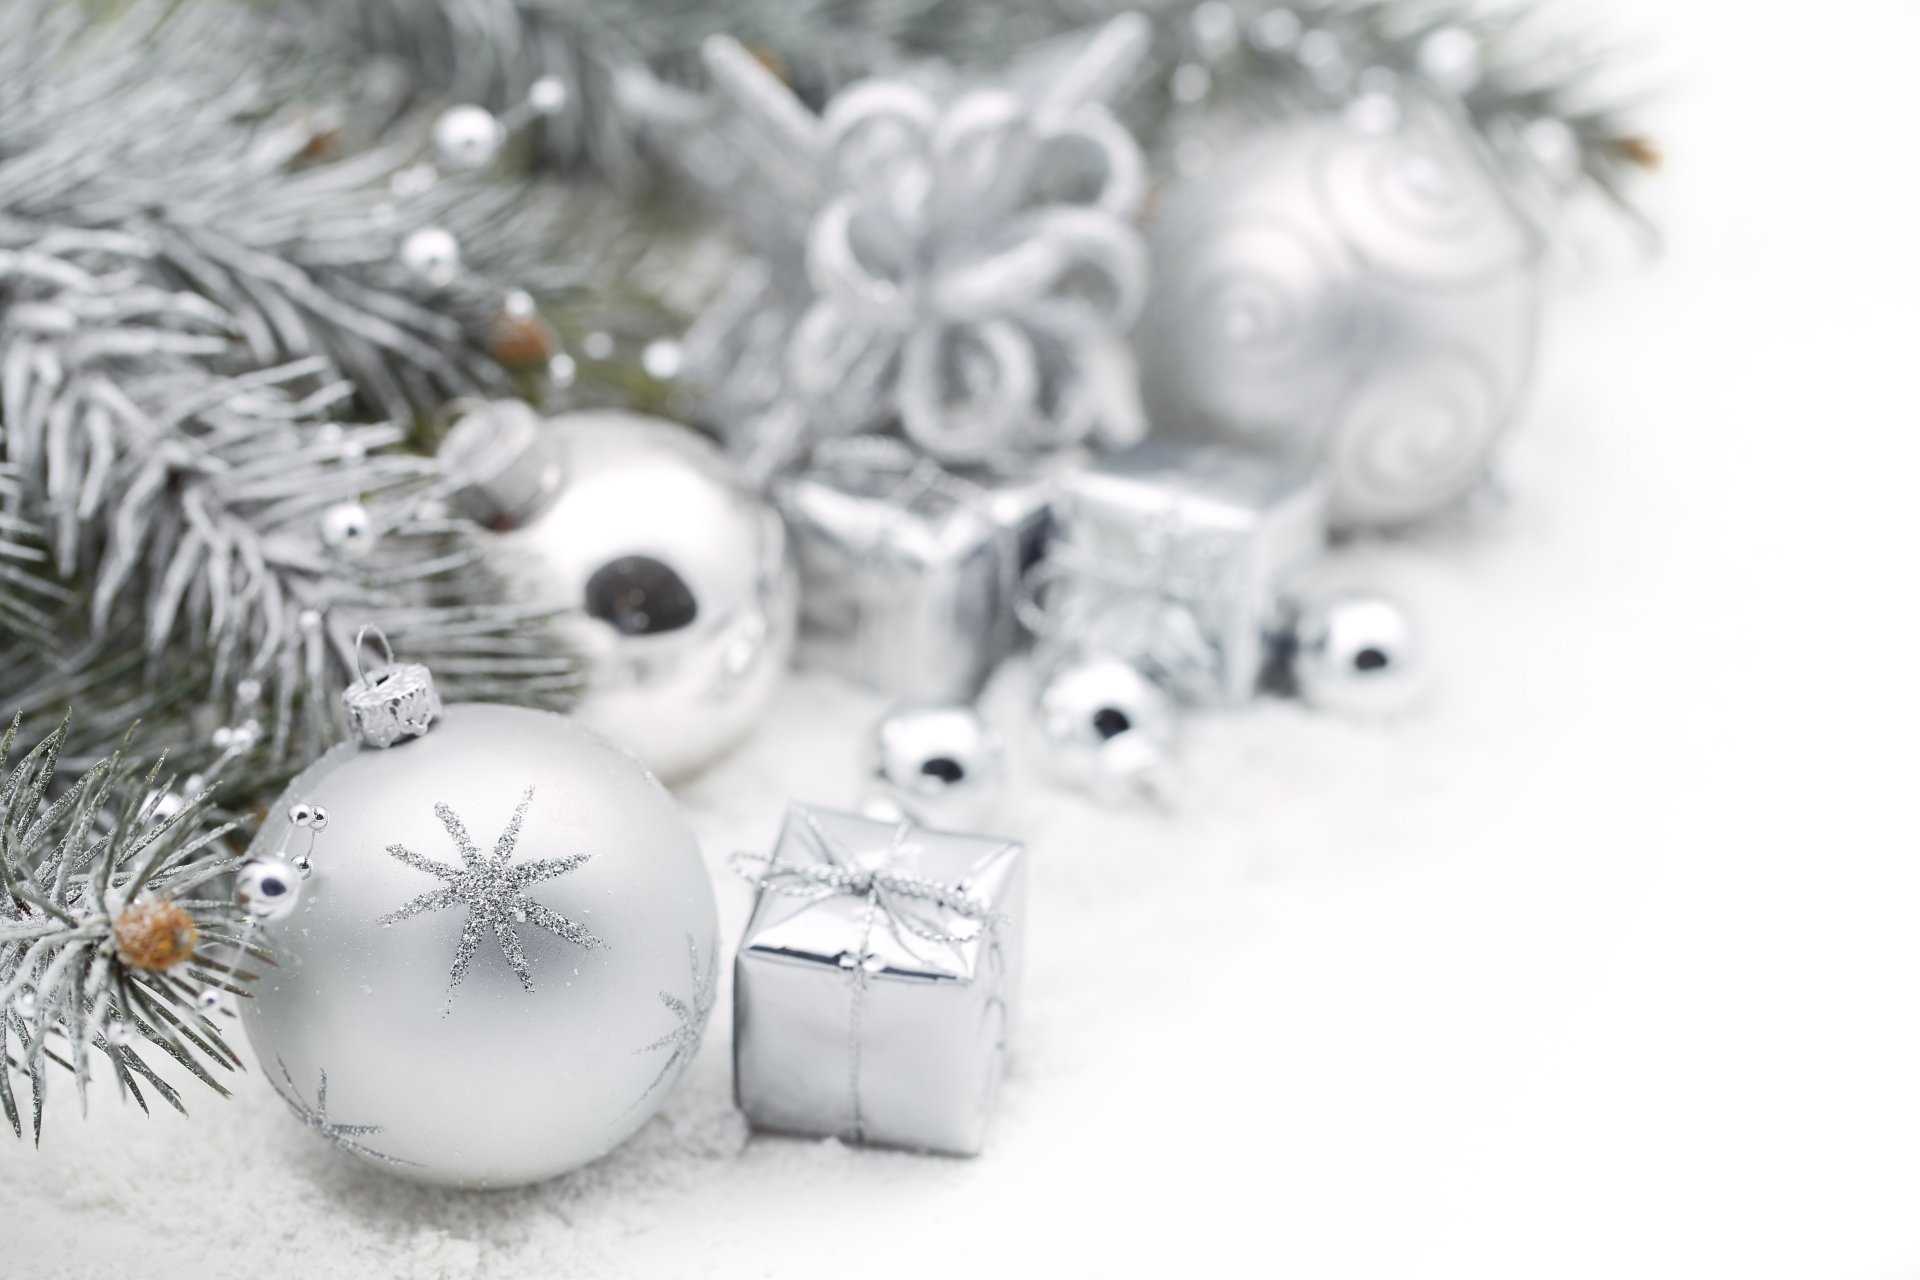 kugeln silbrig weiß spielzeug weihnachtsbaum landschaft zweig tanne schnee winter feiertage neujahr weihnachten